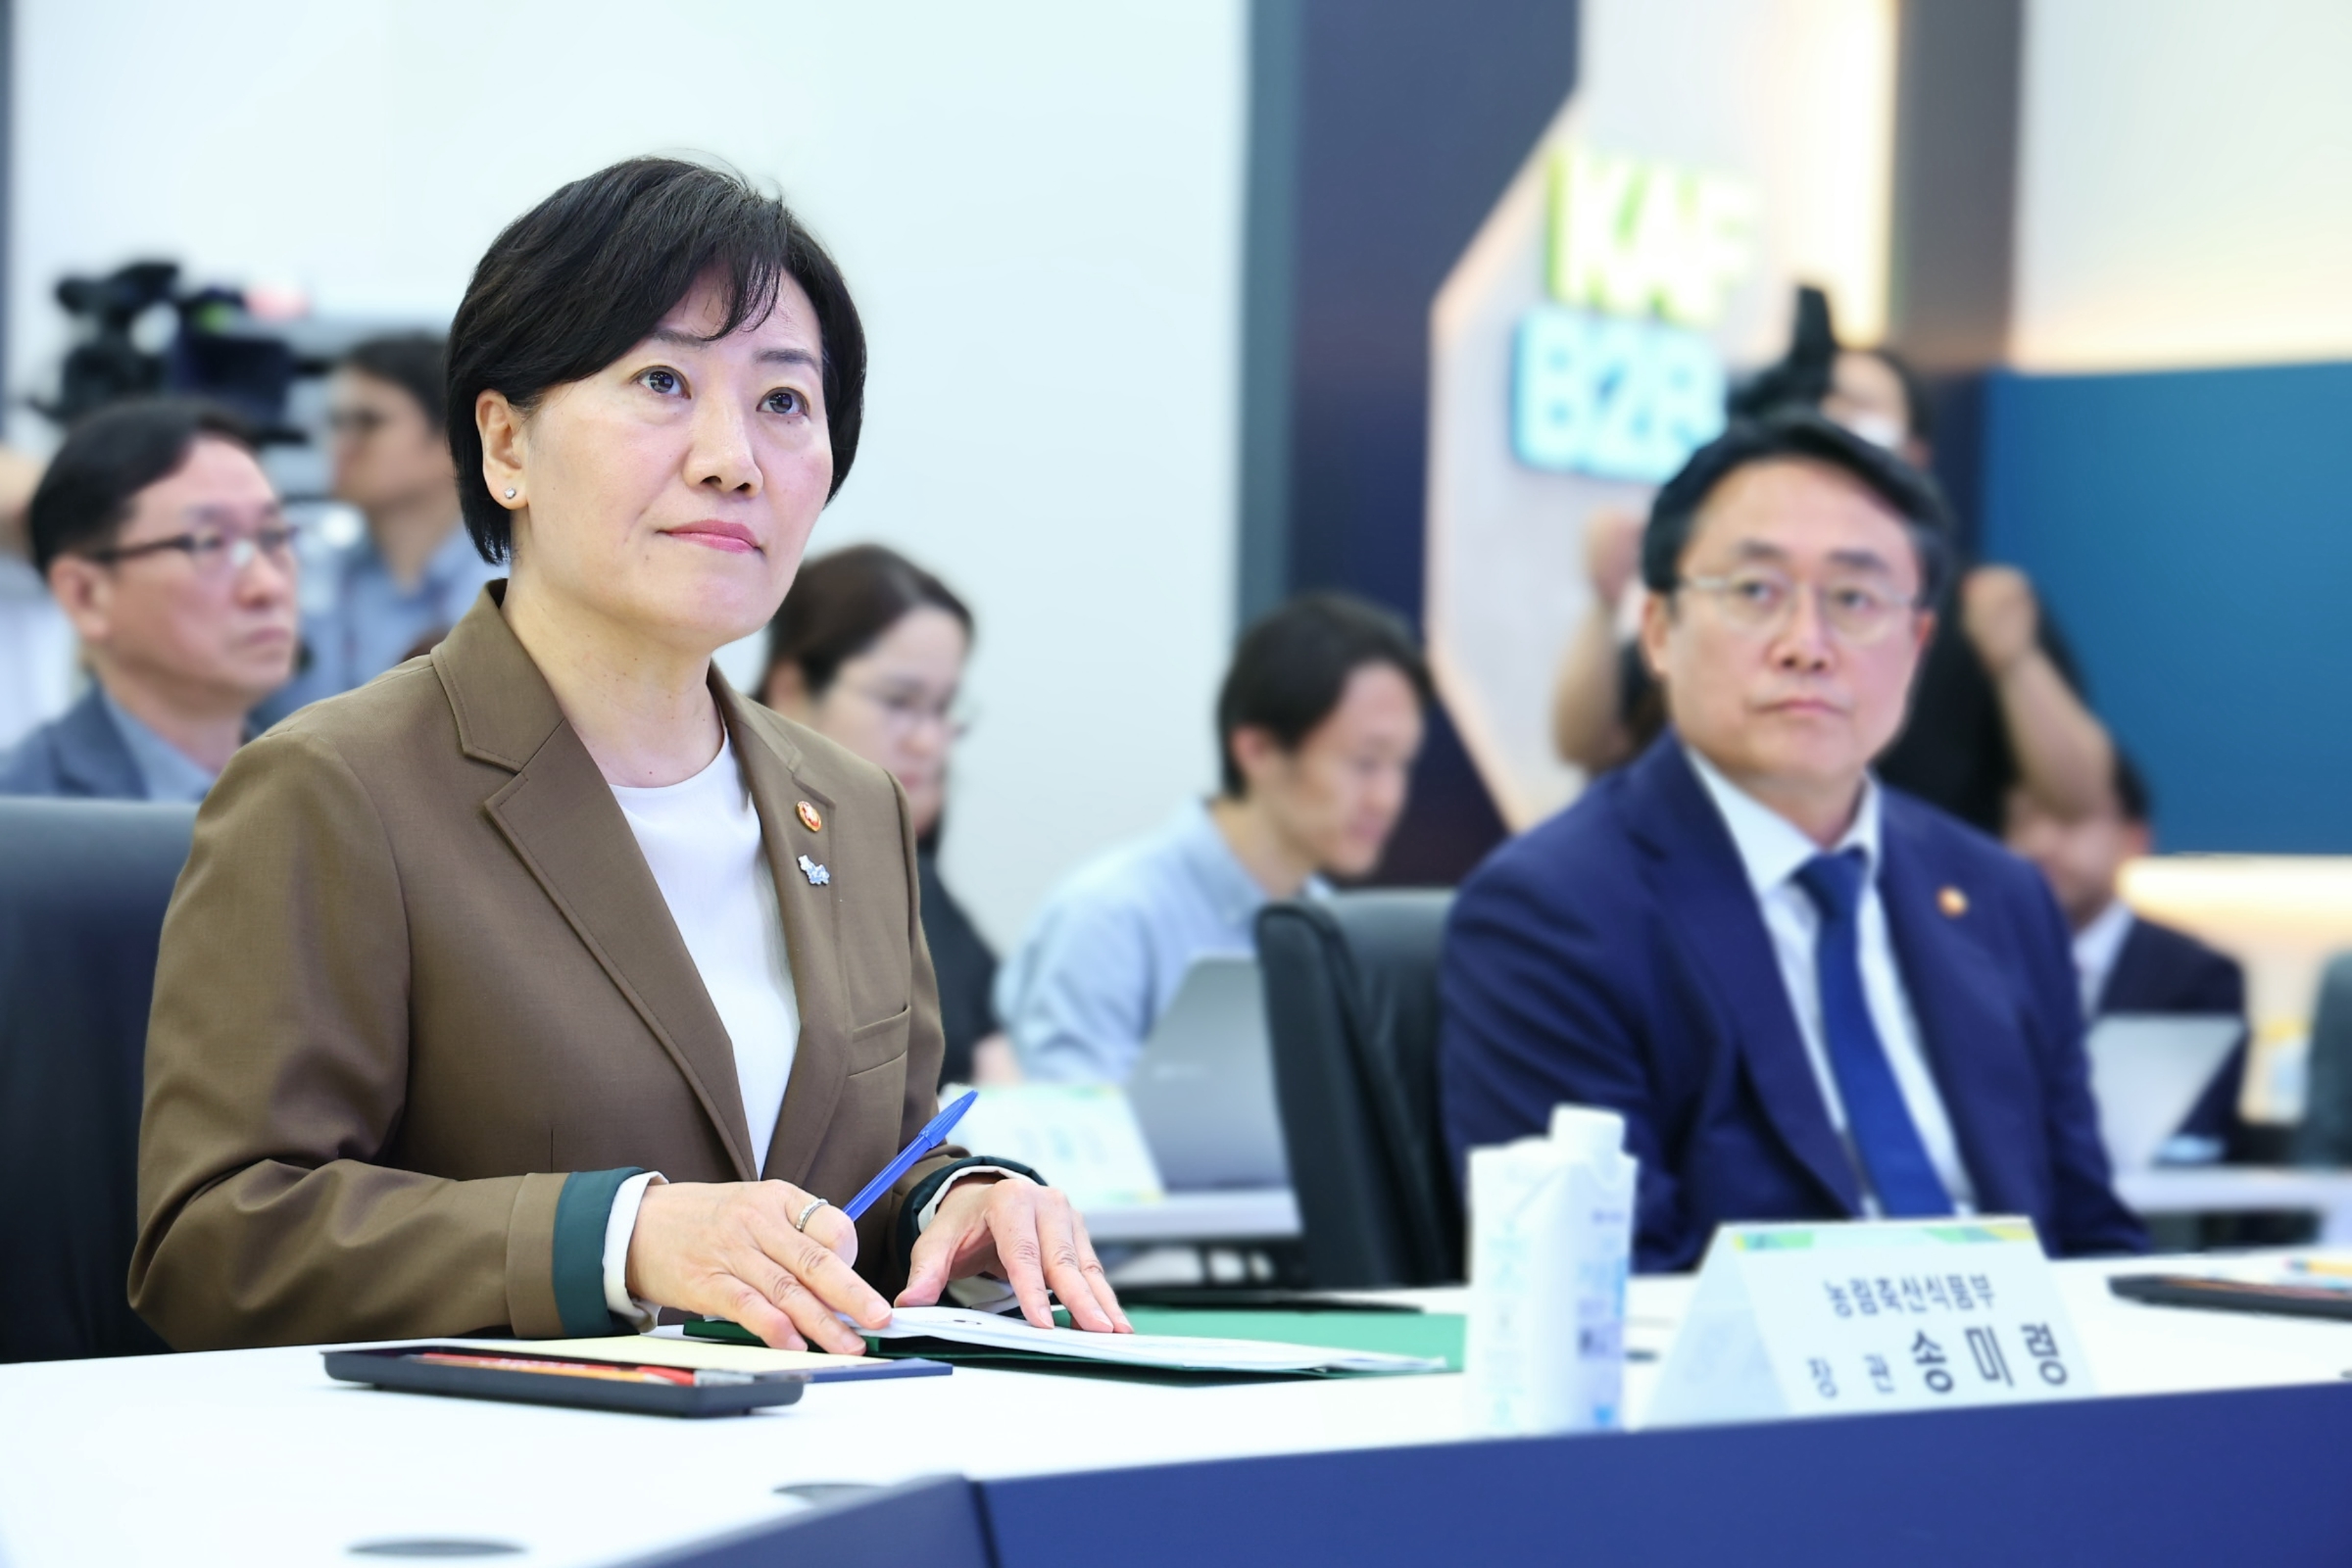 송미령 장관, 온라인도매시장 운영상황 점검 및 시장 활성화를 위한 부처간 협력방안 논의